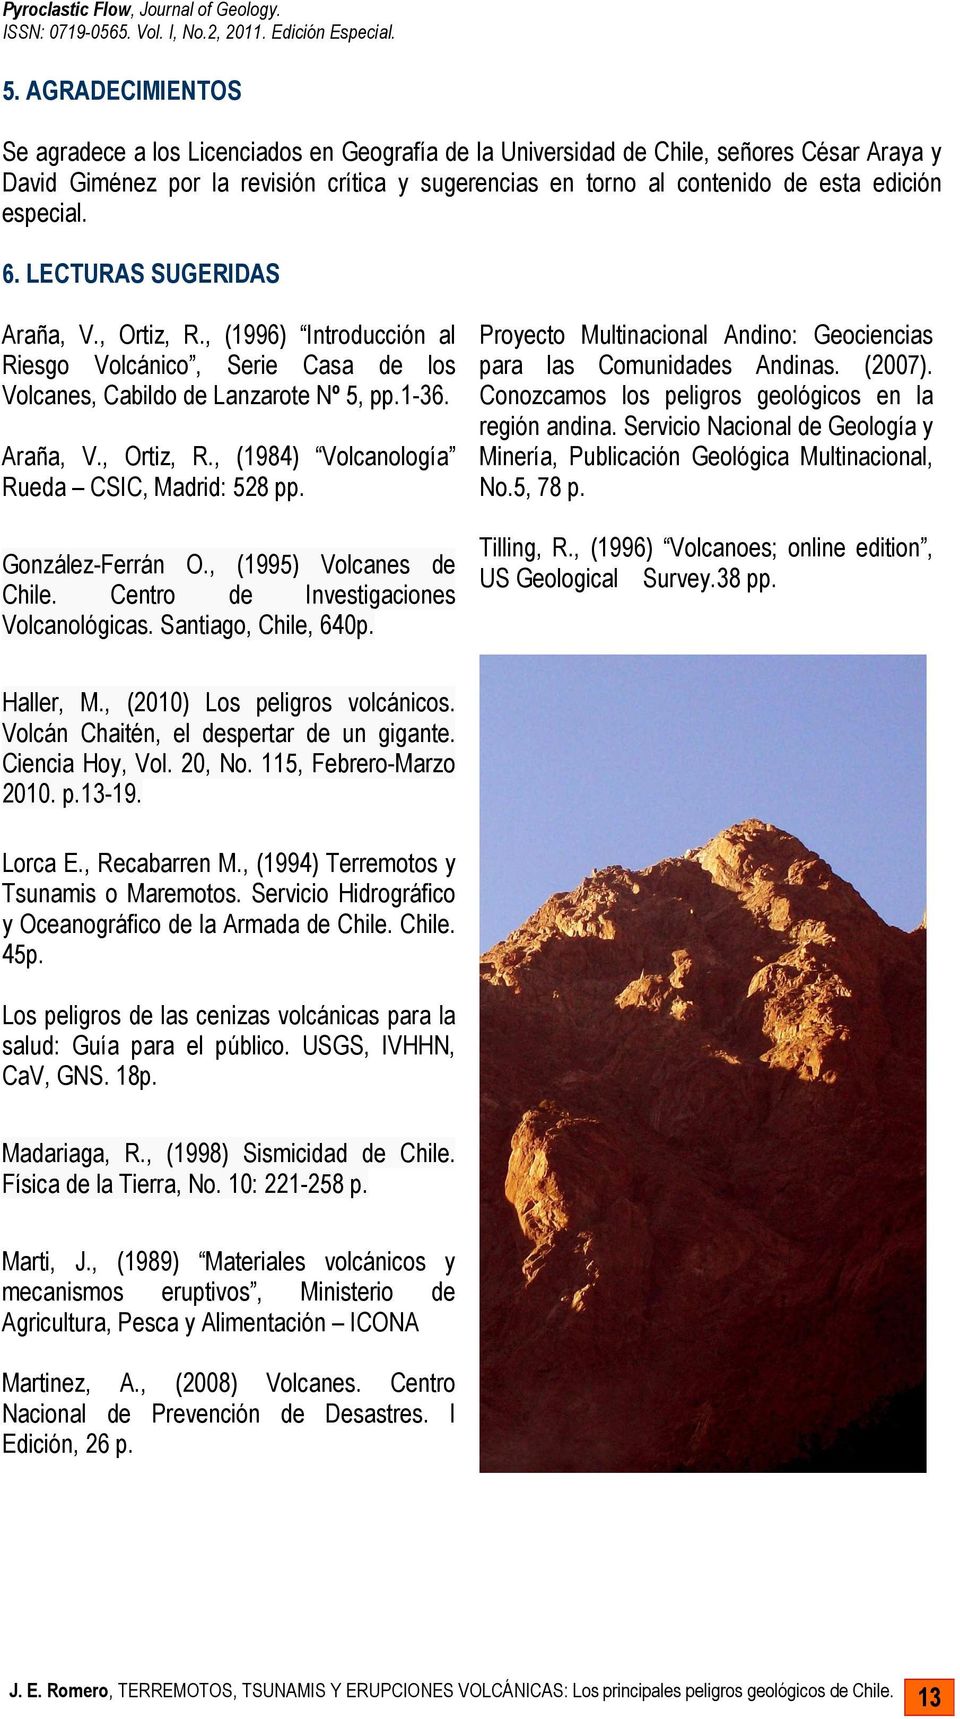 González-Ferrán O., (1995) Volcanes de Chile. Centro de Investigaciones Volcanológicas. Santiago, Chile, 640p. Proyecto Multinacional Andino: Geociencias para las Comunidades Andinas. (2007).